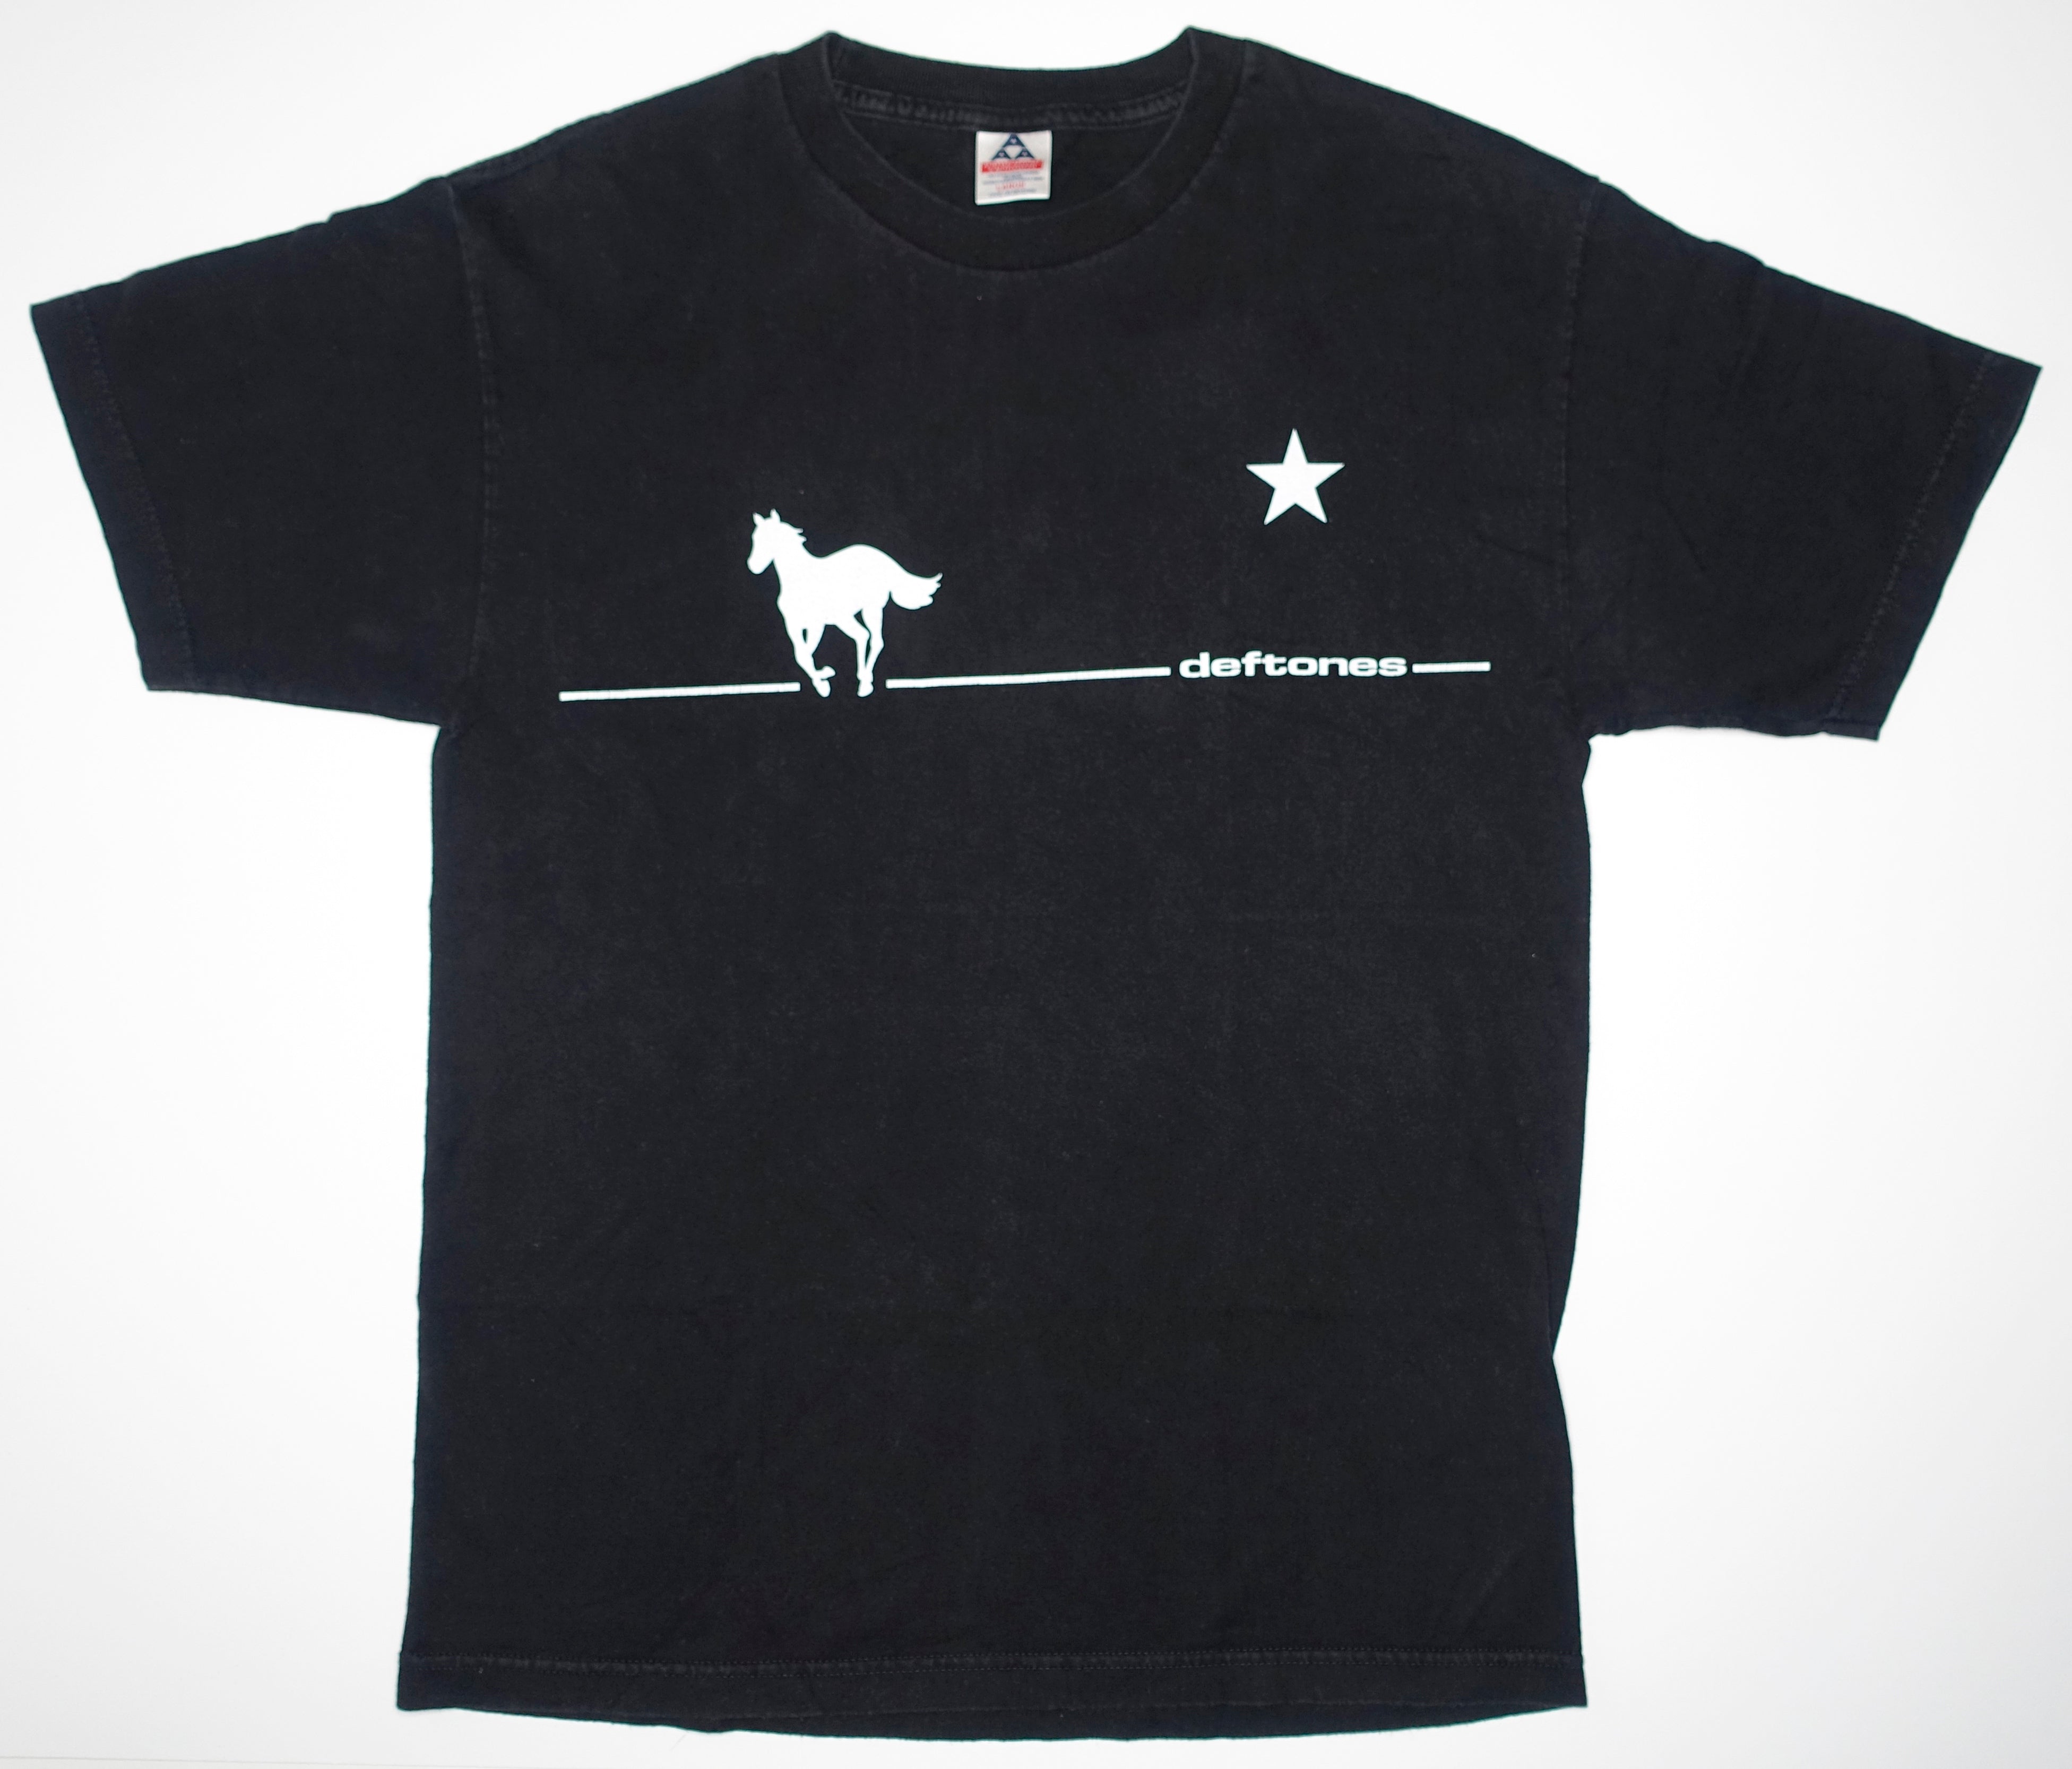 Deftones - White Pony 2000 US Tour Issue Shirt Size Large